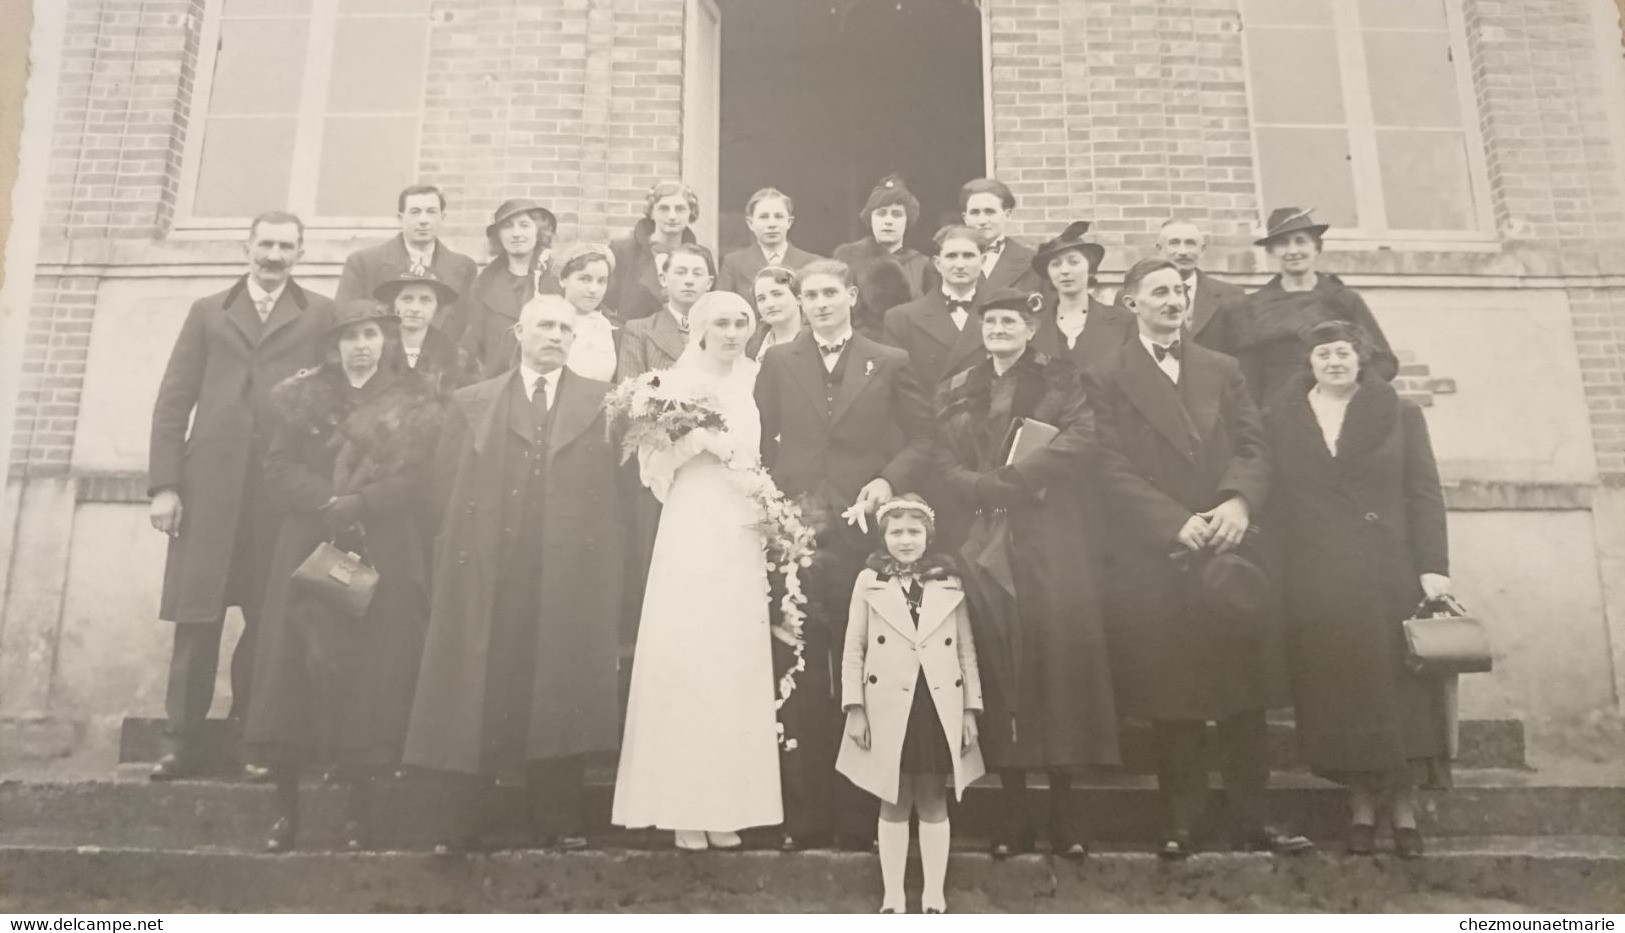 1937 SAINT PRIVE? - MARIAGE DE ANDRE DELAVEAU ET JEANNE PLOTIN - PHOTO YONNE 23*17 CM - Personnes Identifiées